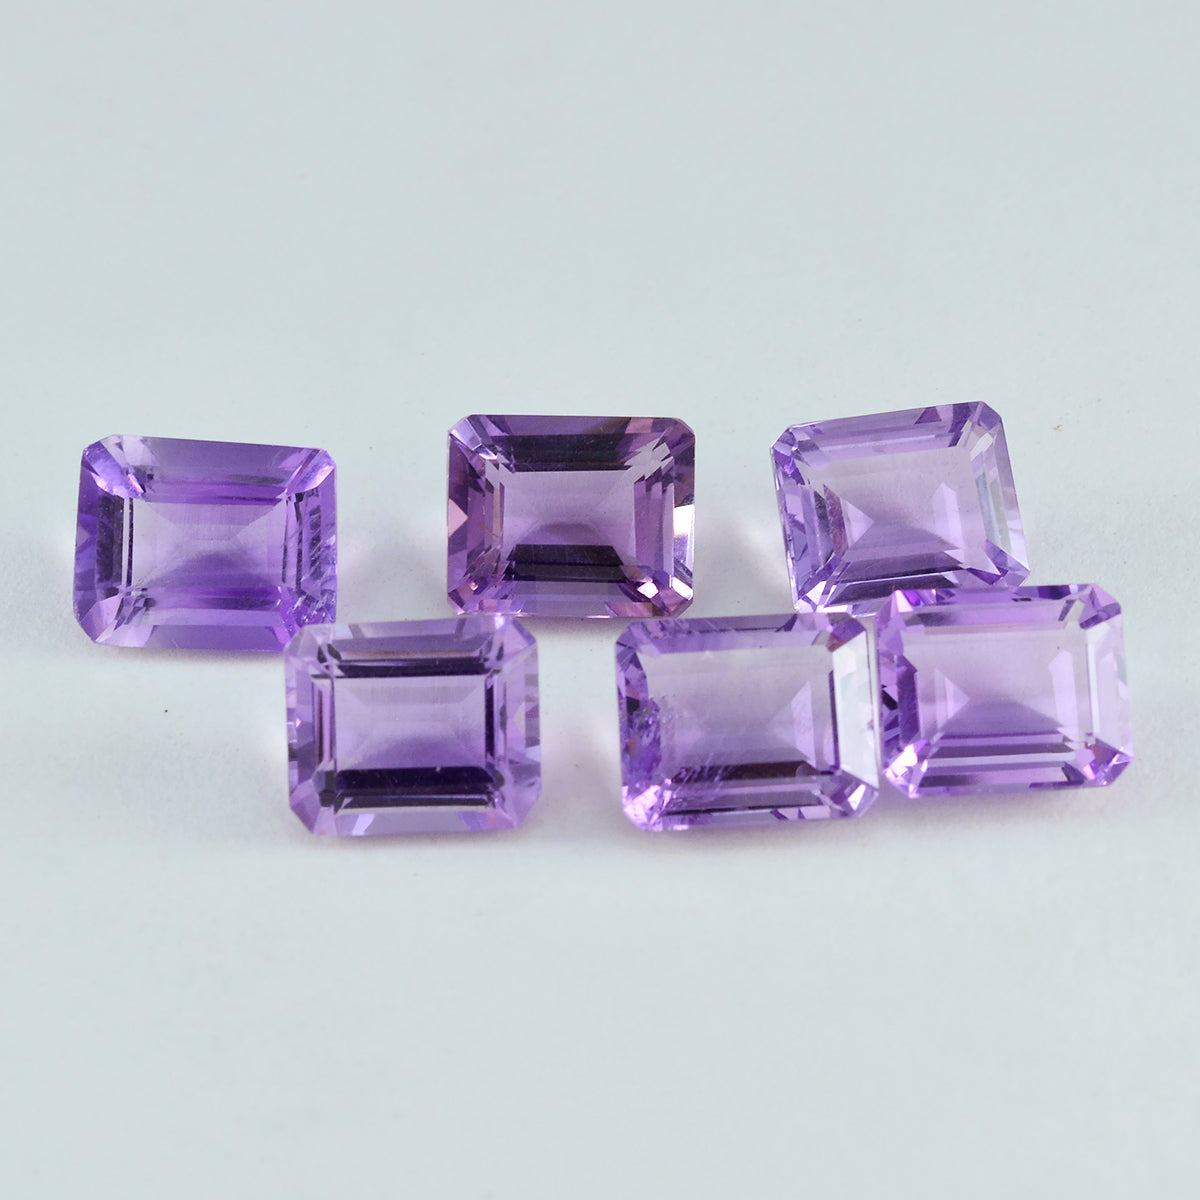 Riyogems 1PC Genuine Purple Amethyst Faceted 9X11 mm Octagon Shape A1 Quality Loose Gem